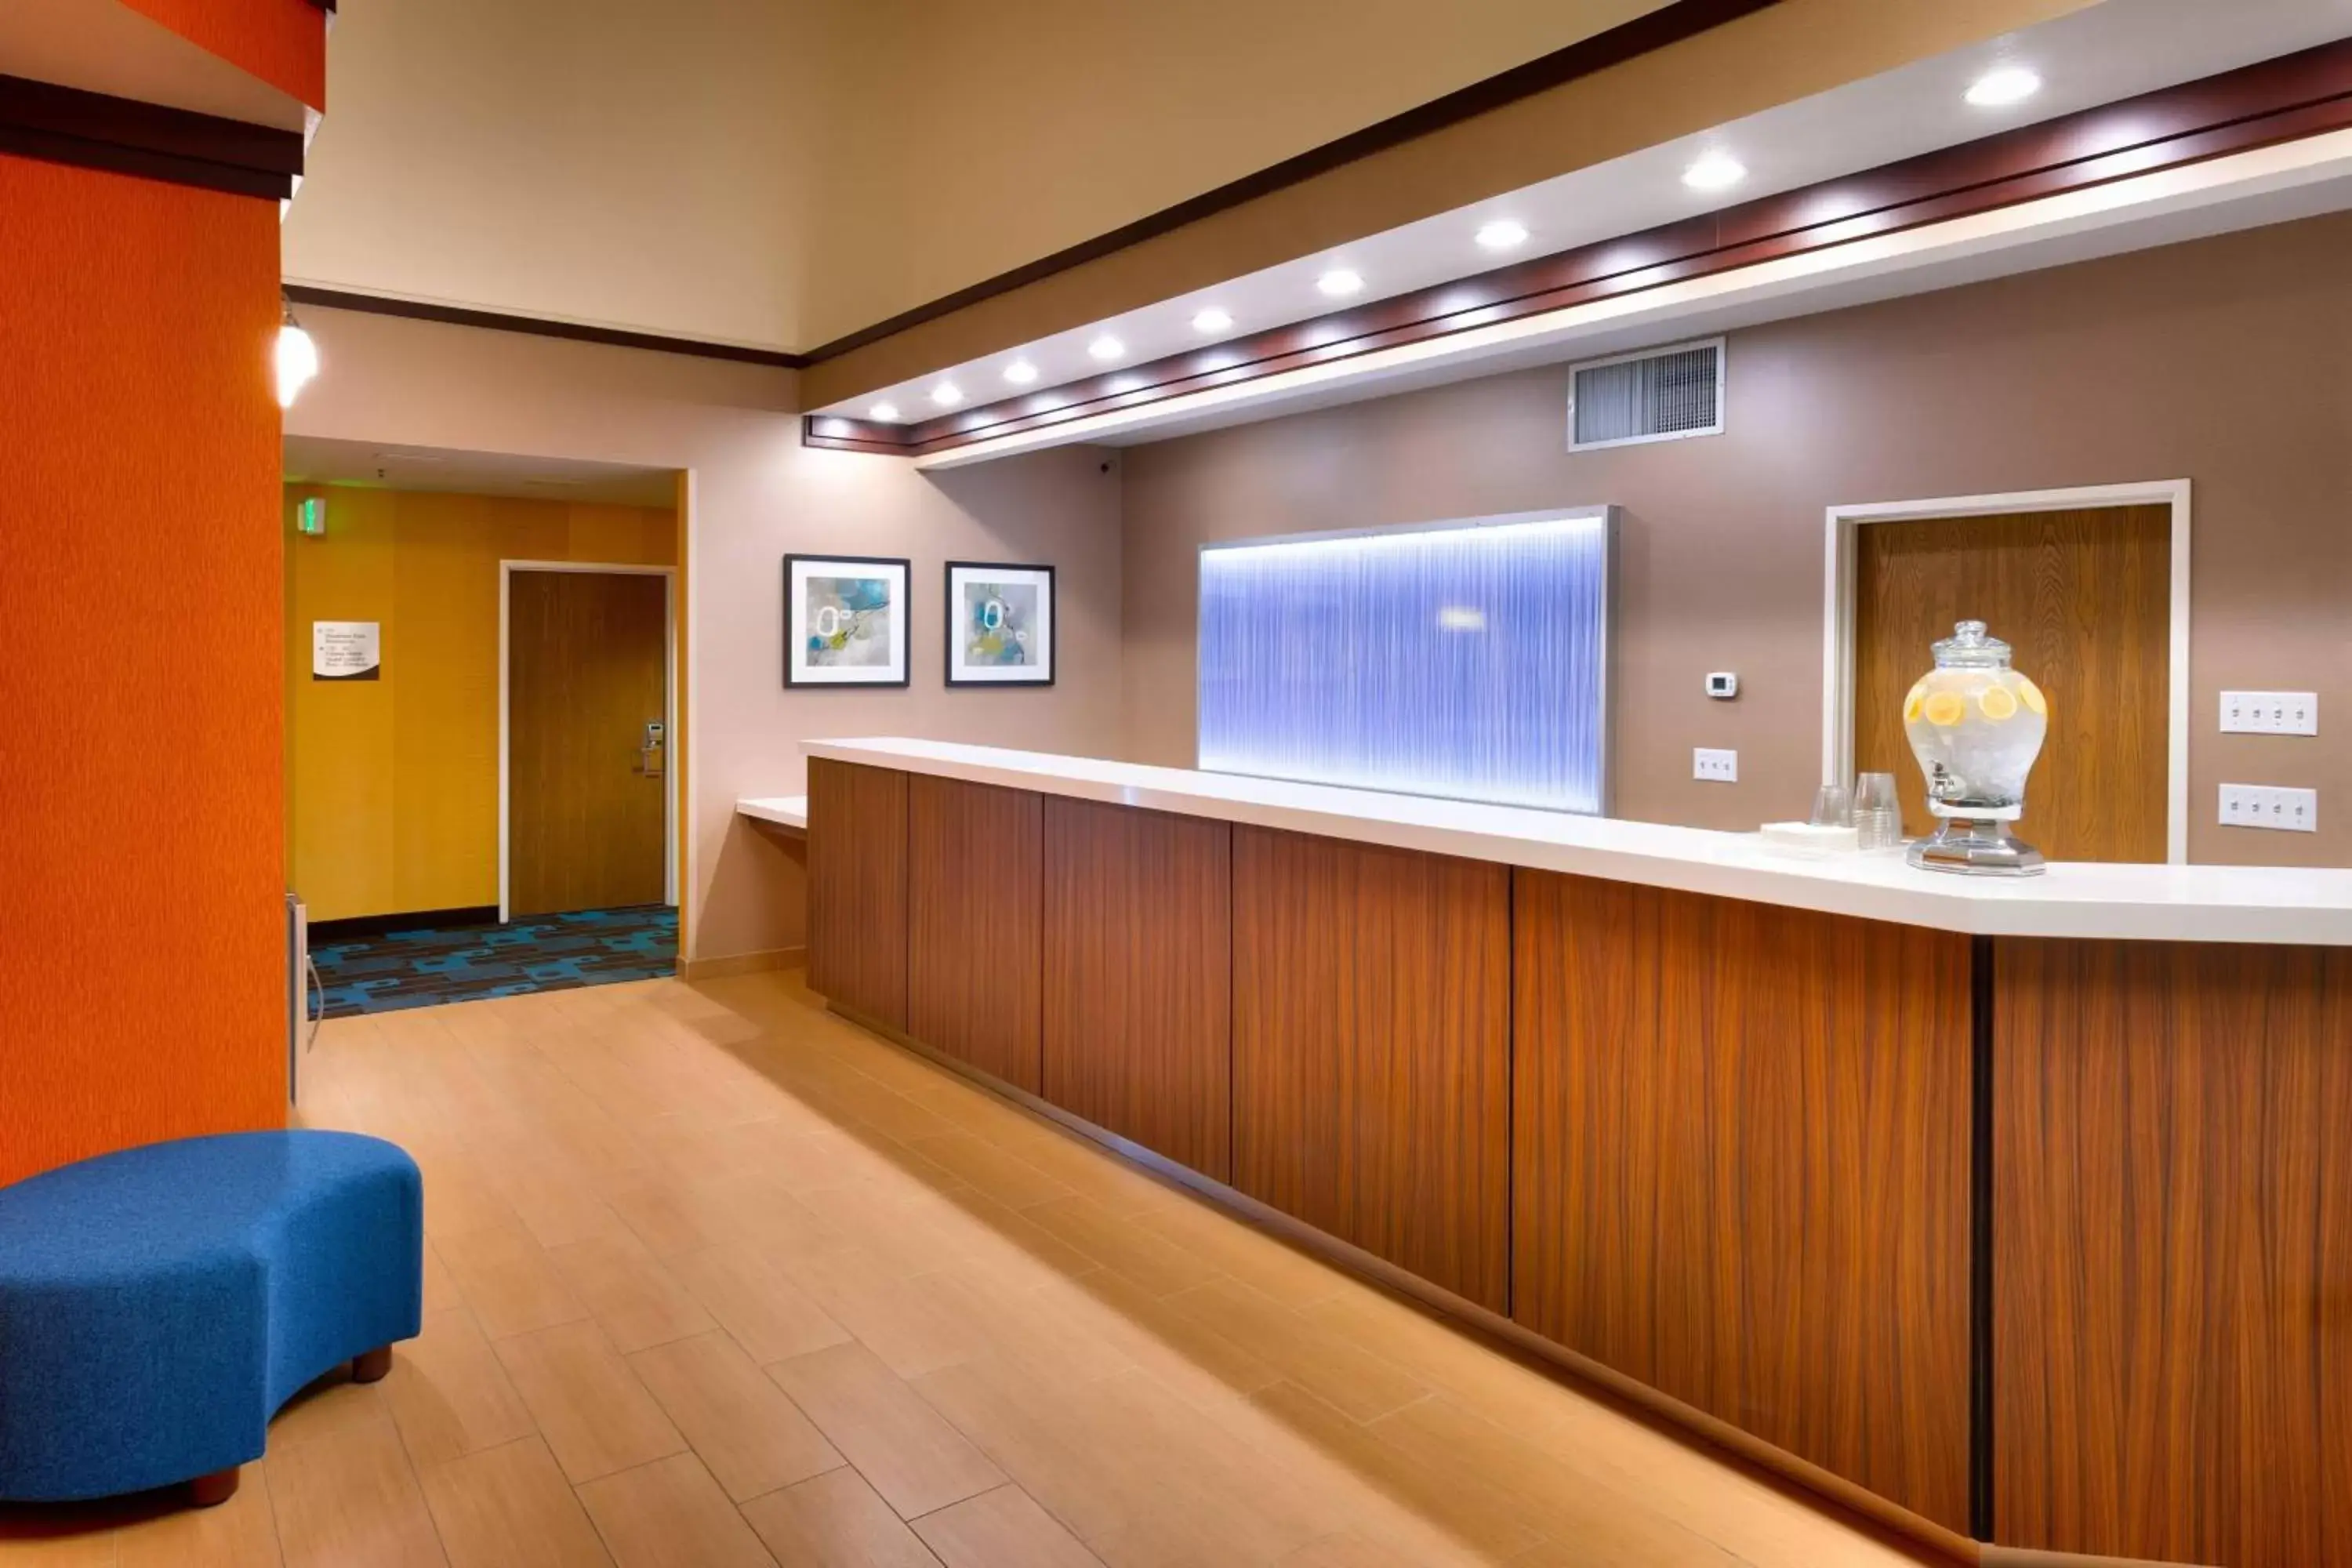 Lobby or reception, Lobby/Reception in Fairfield Inn Salt Lake City Draper